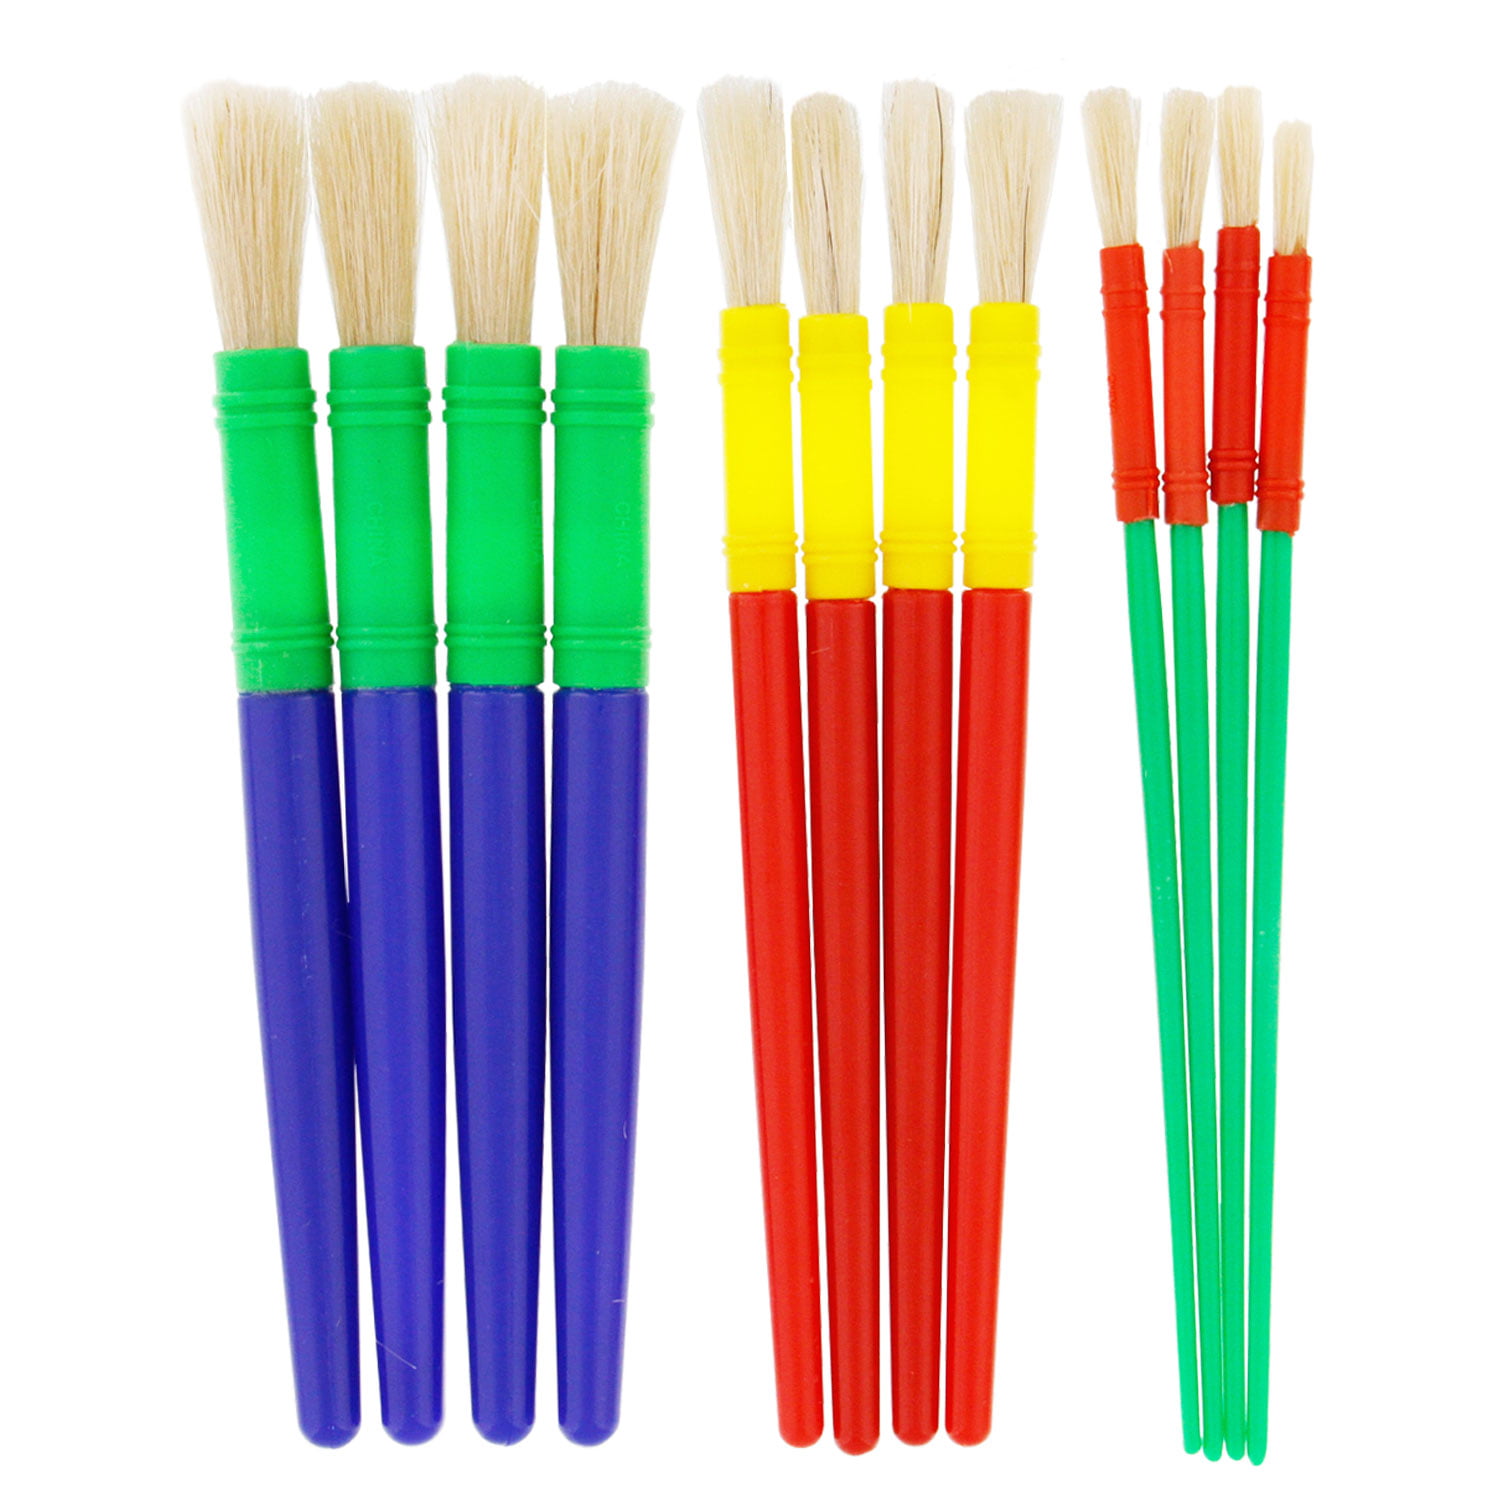 Plastic Paint Brush Easy Hold for Kids Art Painting Pack of Hog Hair Brushes 